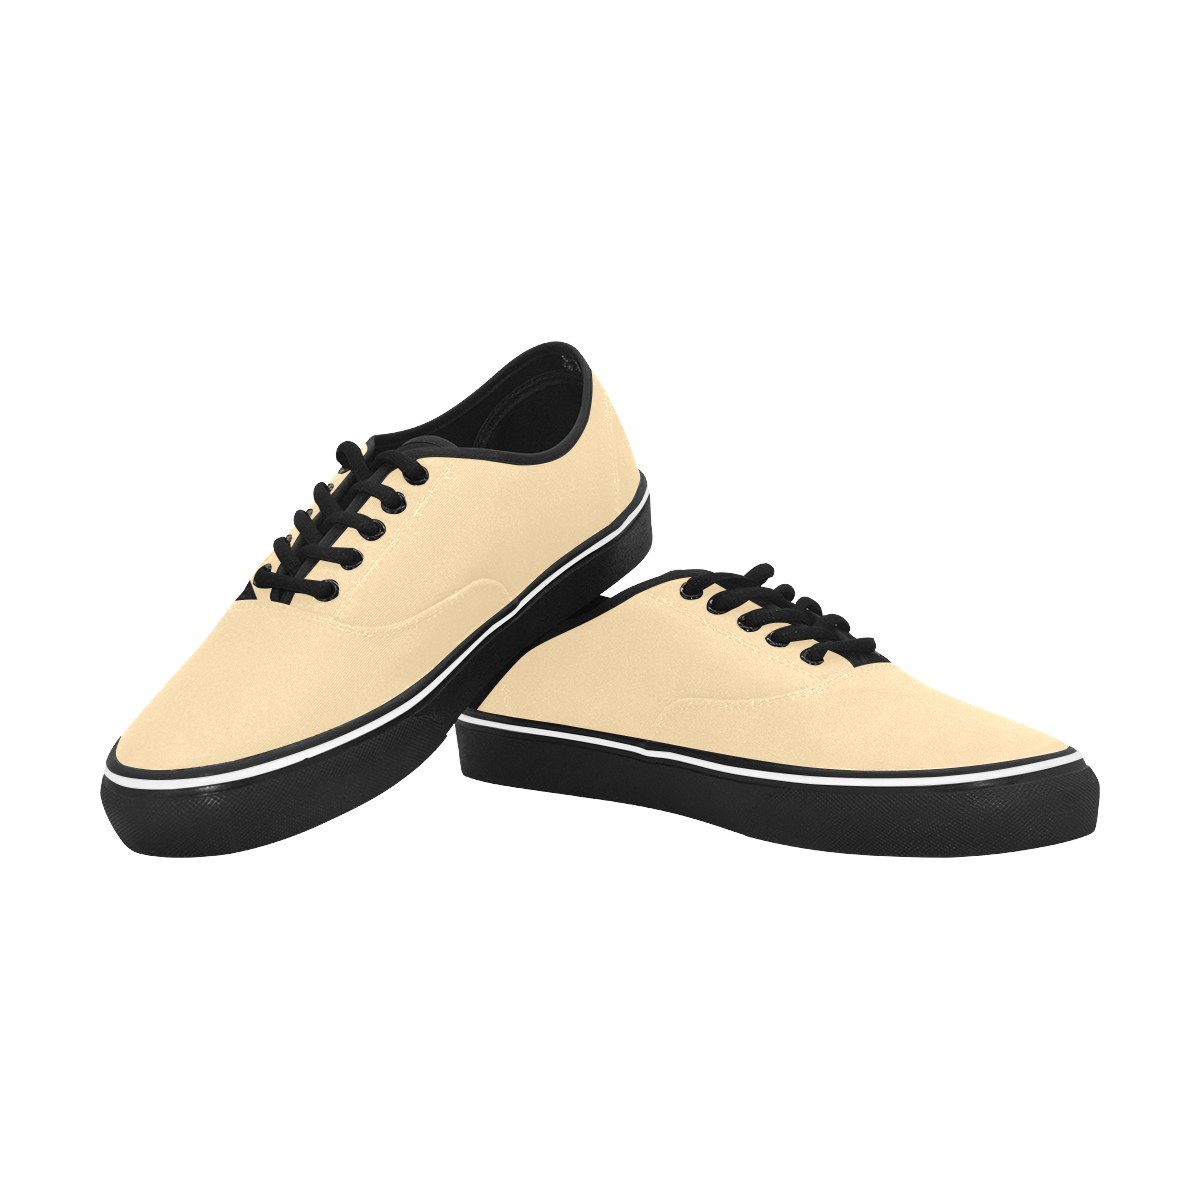 color navajo white Classic Men's Canvas Low Top Shoes (Model E001-4)